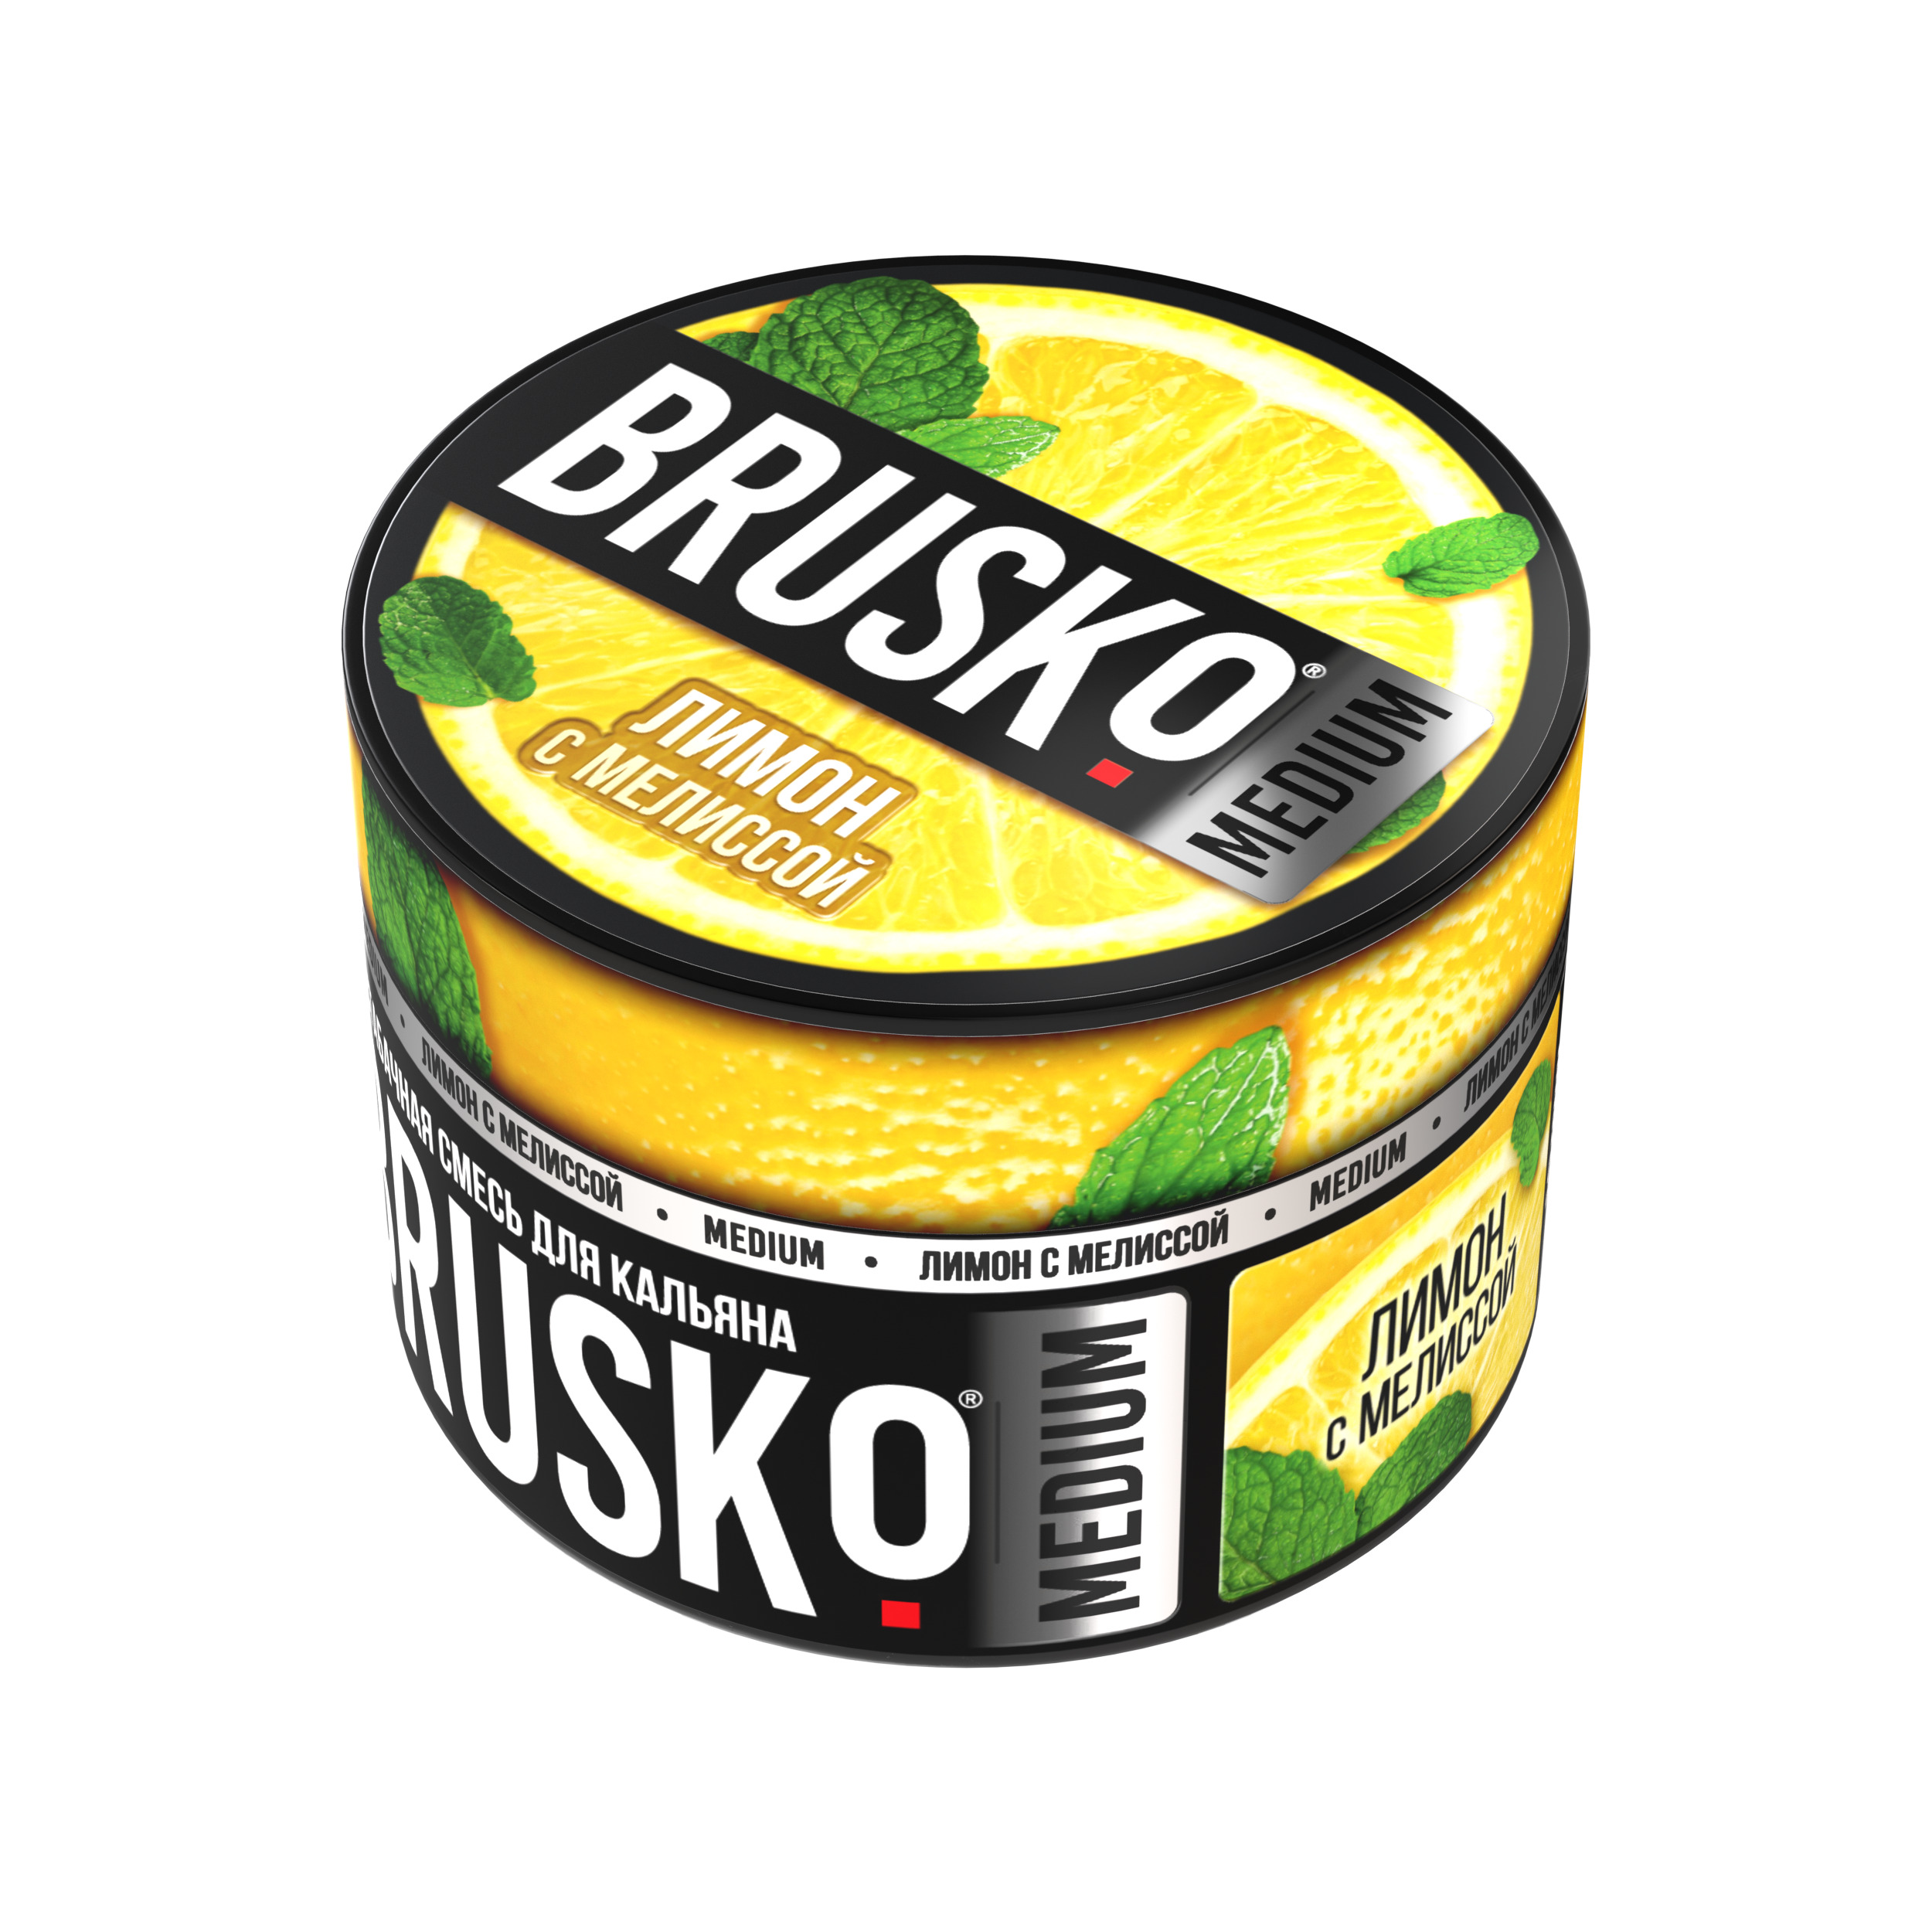 Бестабачная смесь для кальяна BRUSKO, 50 г, Лимон с мелиссой, Medium (М)